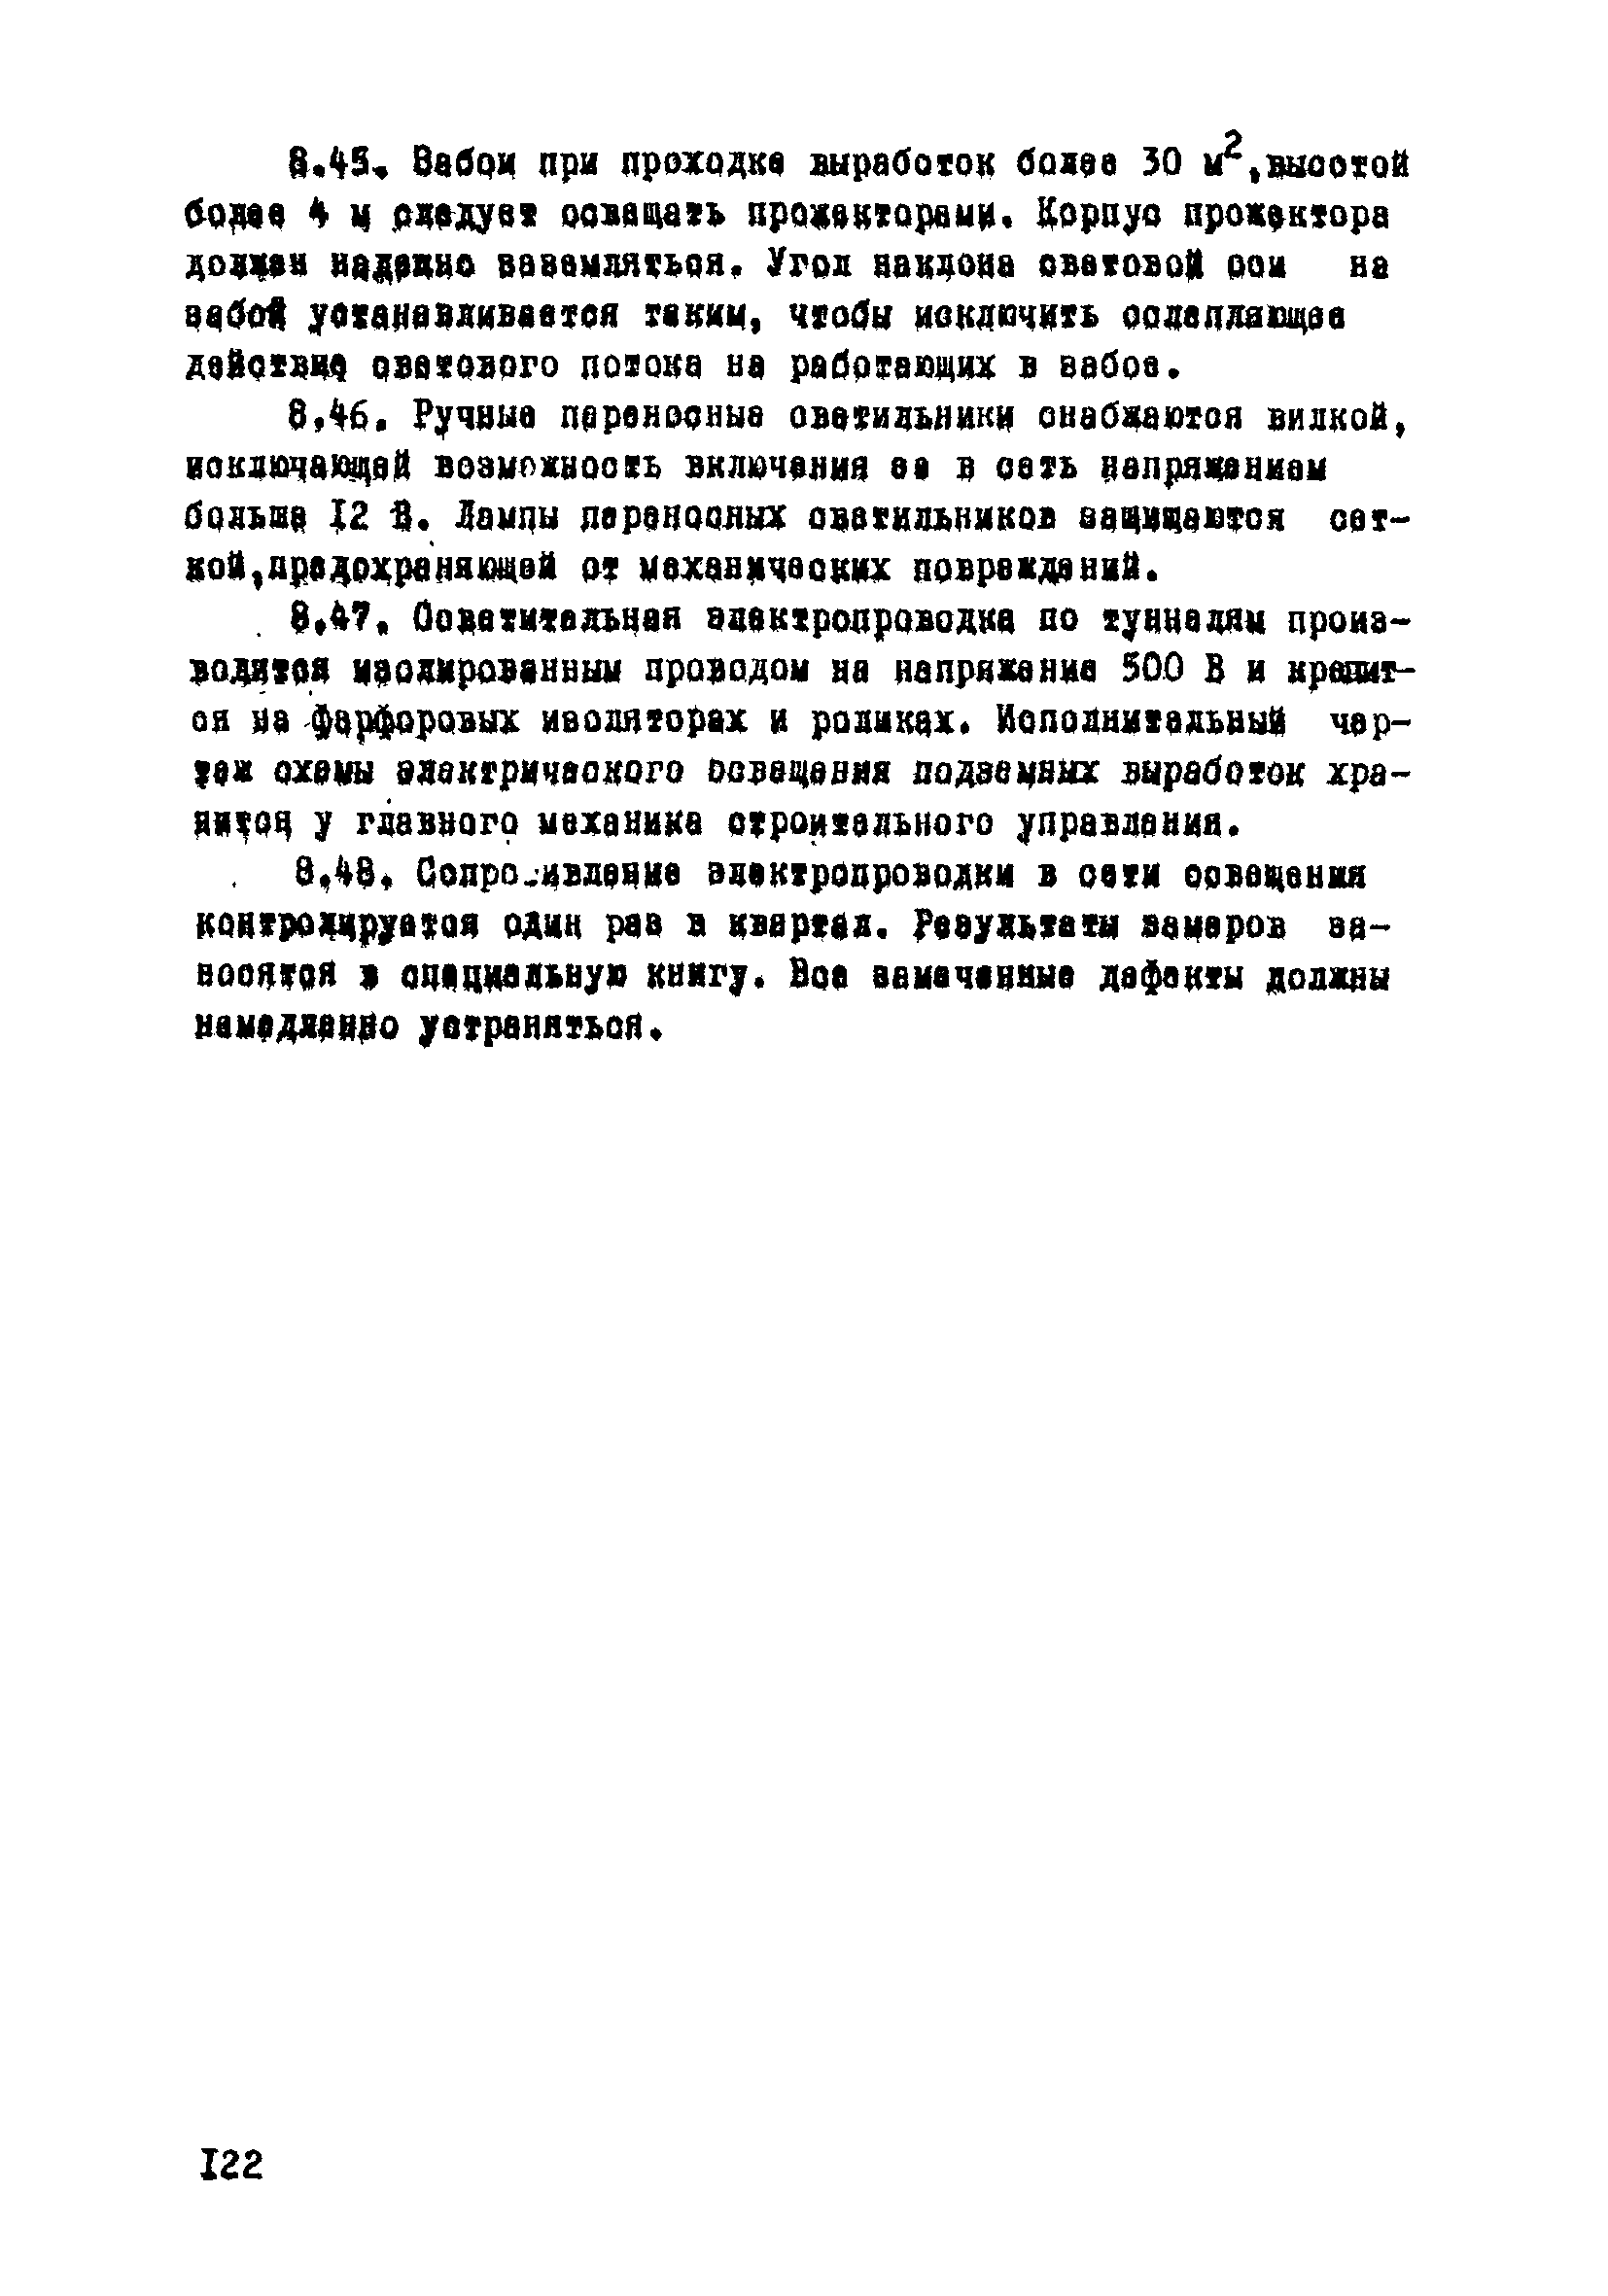 ВСН 33-77/МО СССР